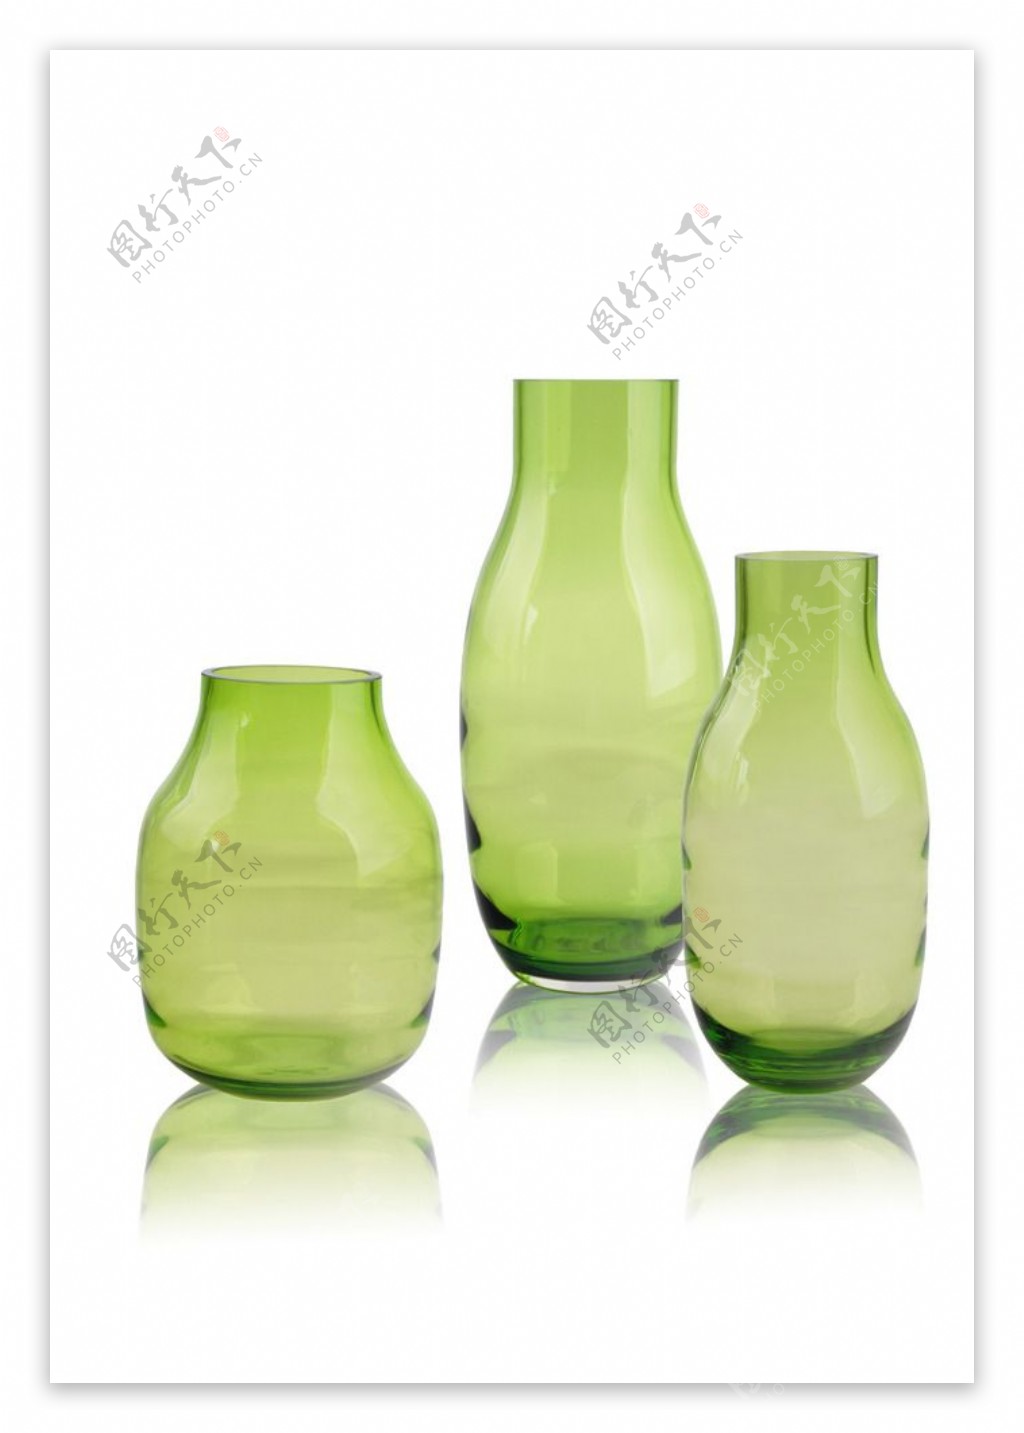 小清新绿色玻璃花瓶高档